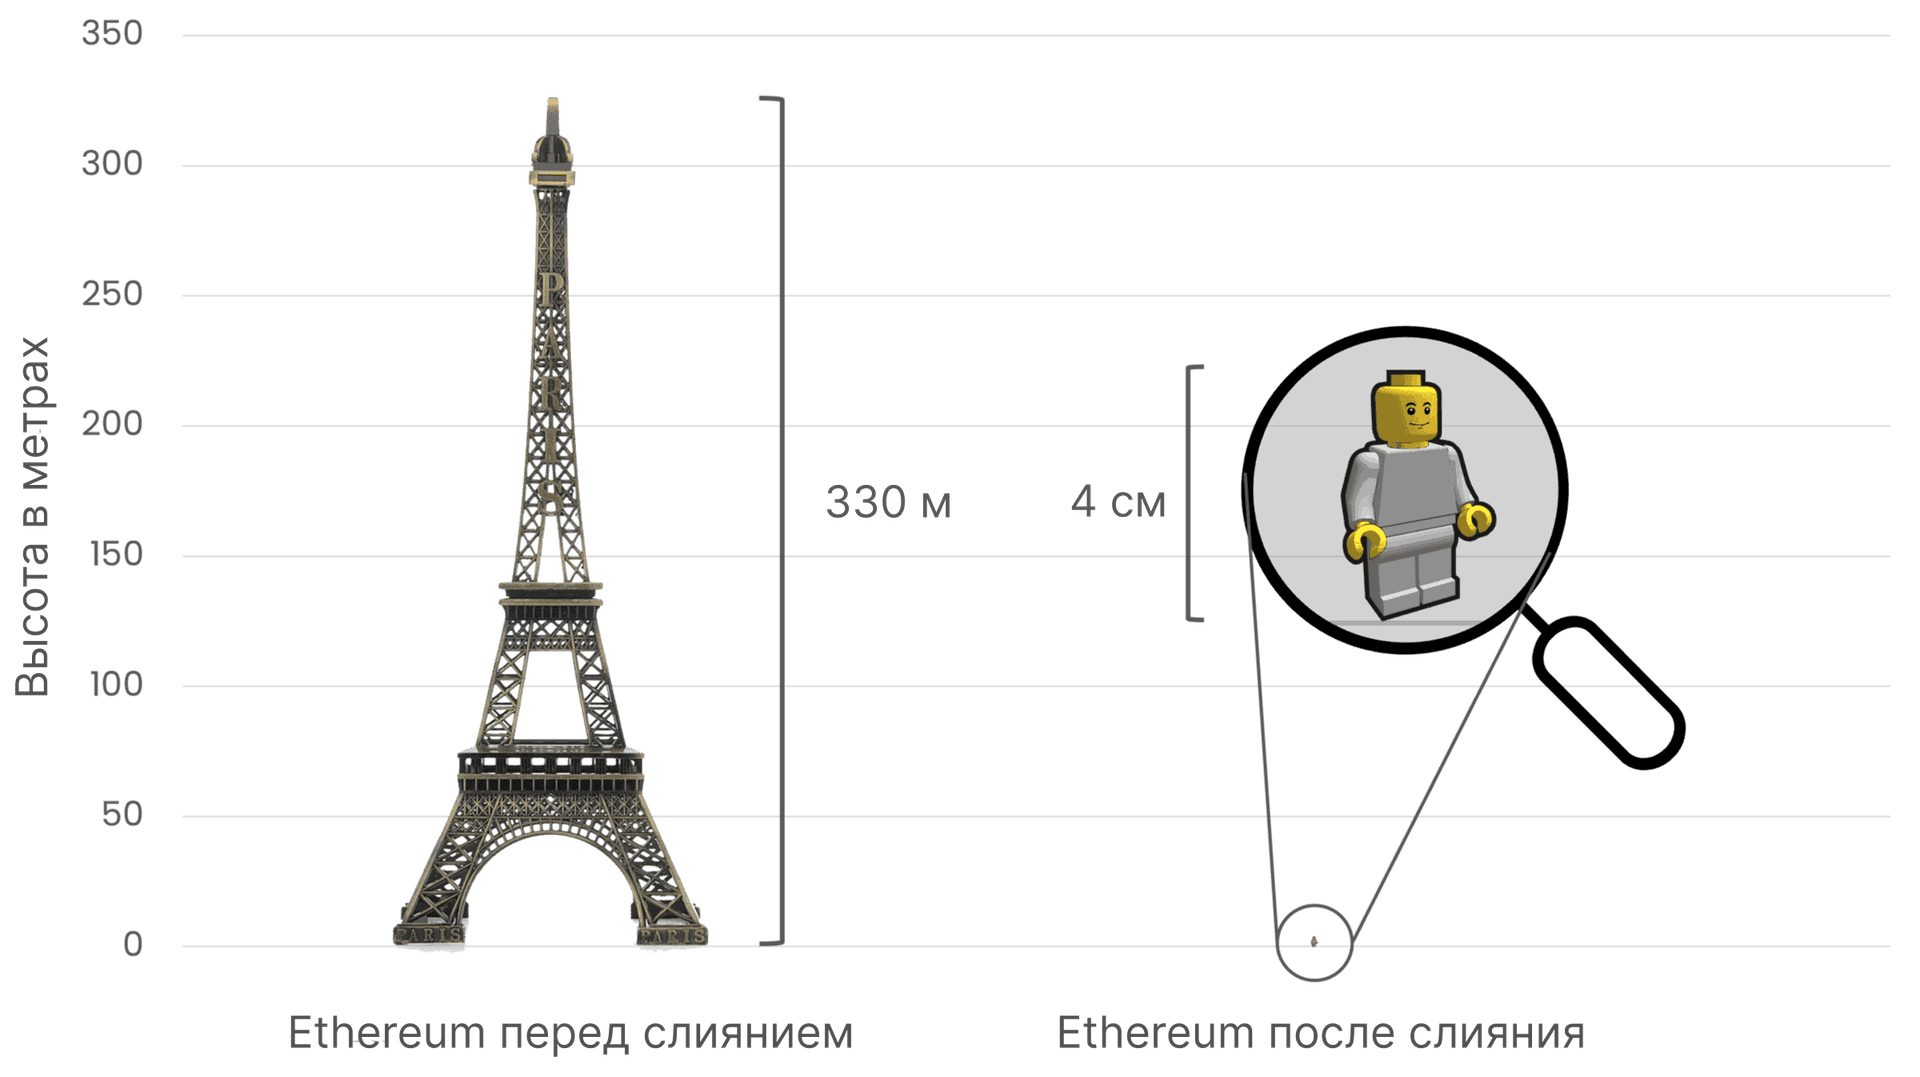 Сравнение энергопотребления сетью Ethereum перед слиянием и после него. Эйфелева башня (330 метров в высоту) слева символизирует энергопотребление до слияния, а маленькая фигурка Lego (4 сантиметра в высоту) справа демонстрирует огромное уменьшение энергопотребления после слияния.